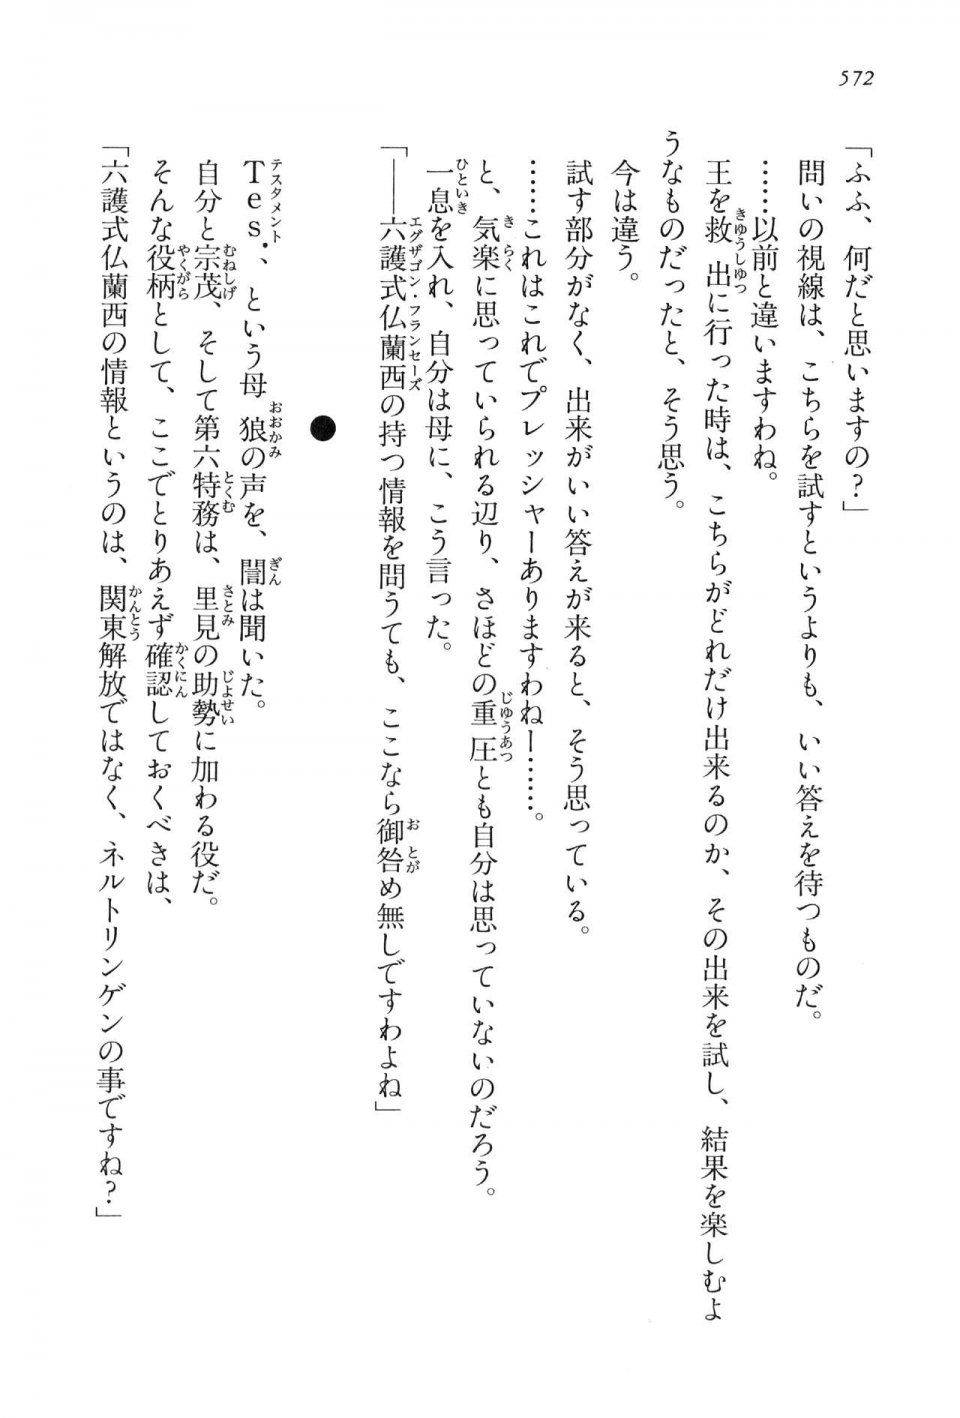 Kyoukai Senjou no Horizon LN Vol 16(7A) - Photo #572